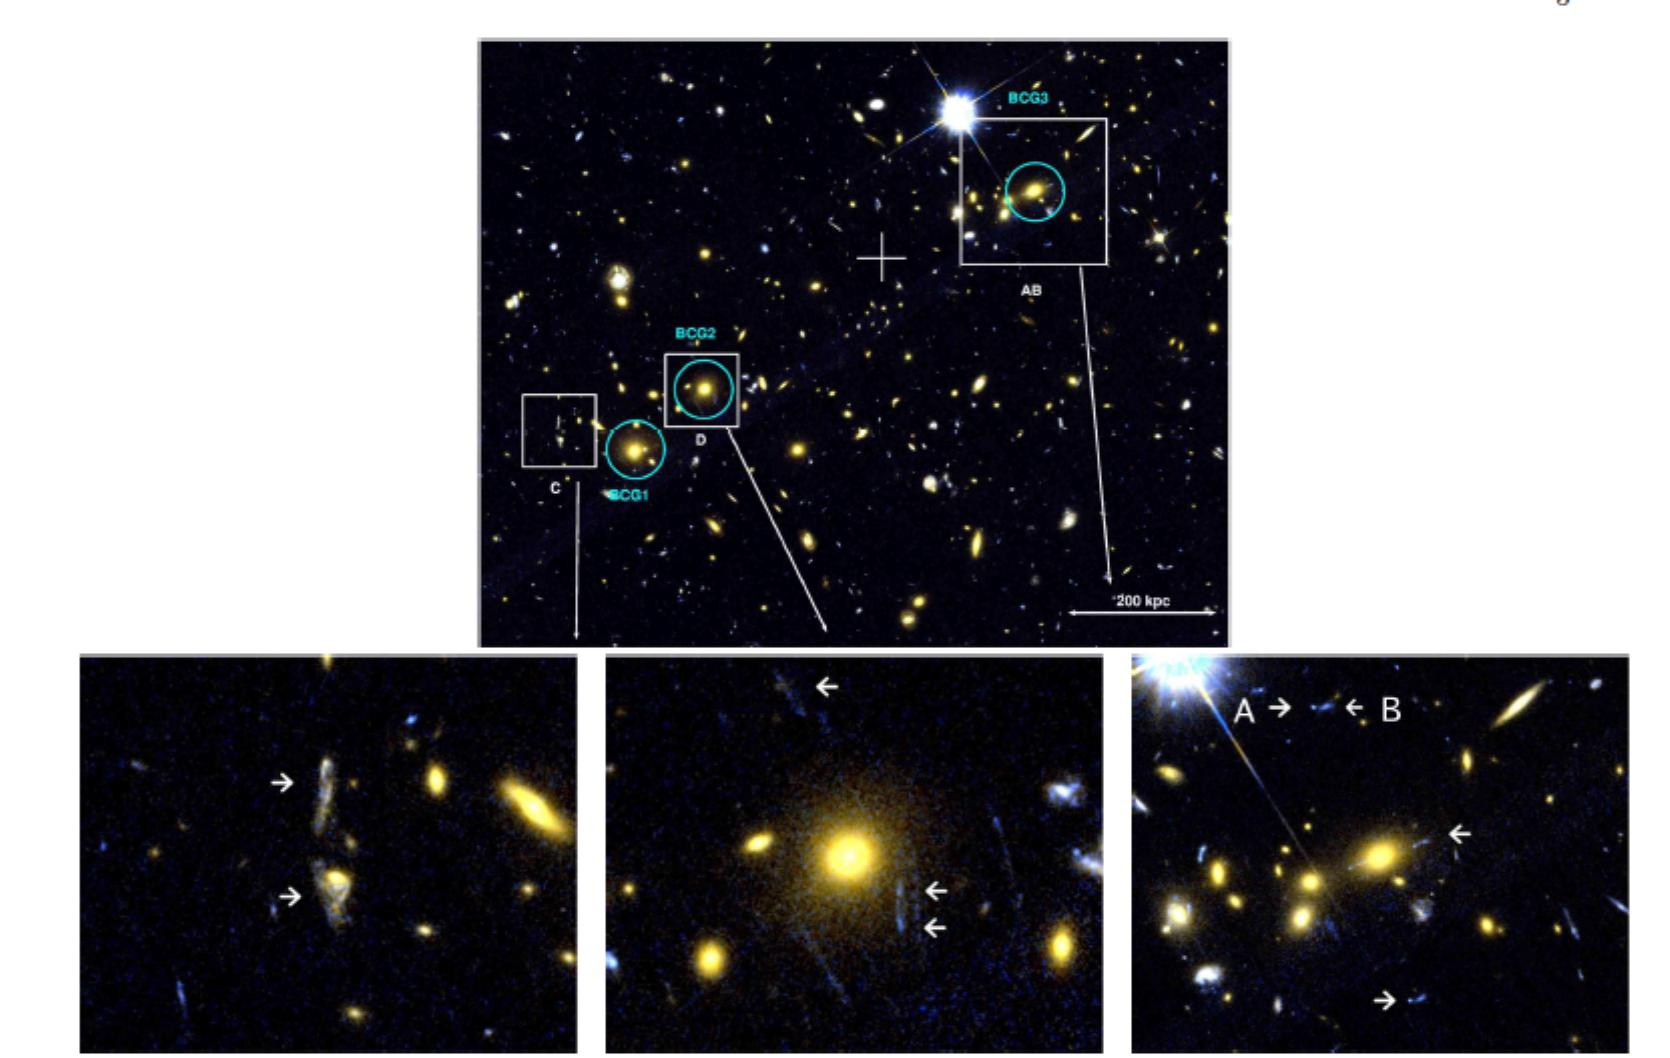 Ukázka silného gravitačního čočkování u některých nejmasivnějších galaxií z kupy Kulka - 1E 0657-558 (zdroj M. Bradáč, S.W. Allen, T. Treu et al, arXiv:0806.2320v2)